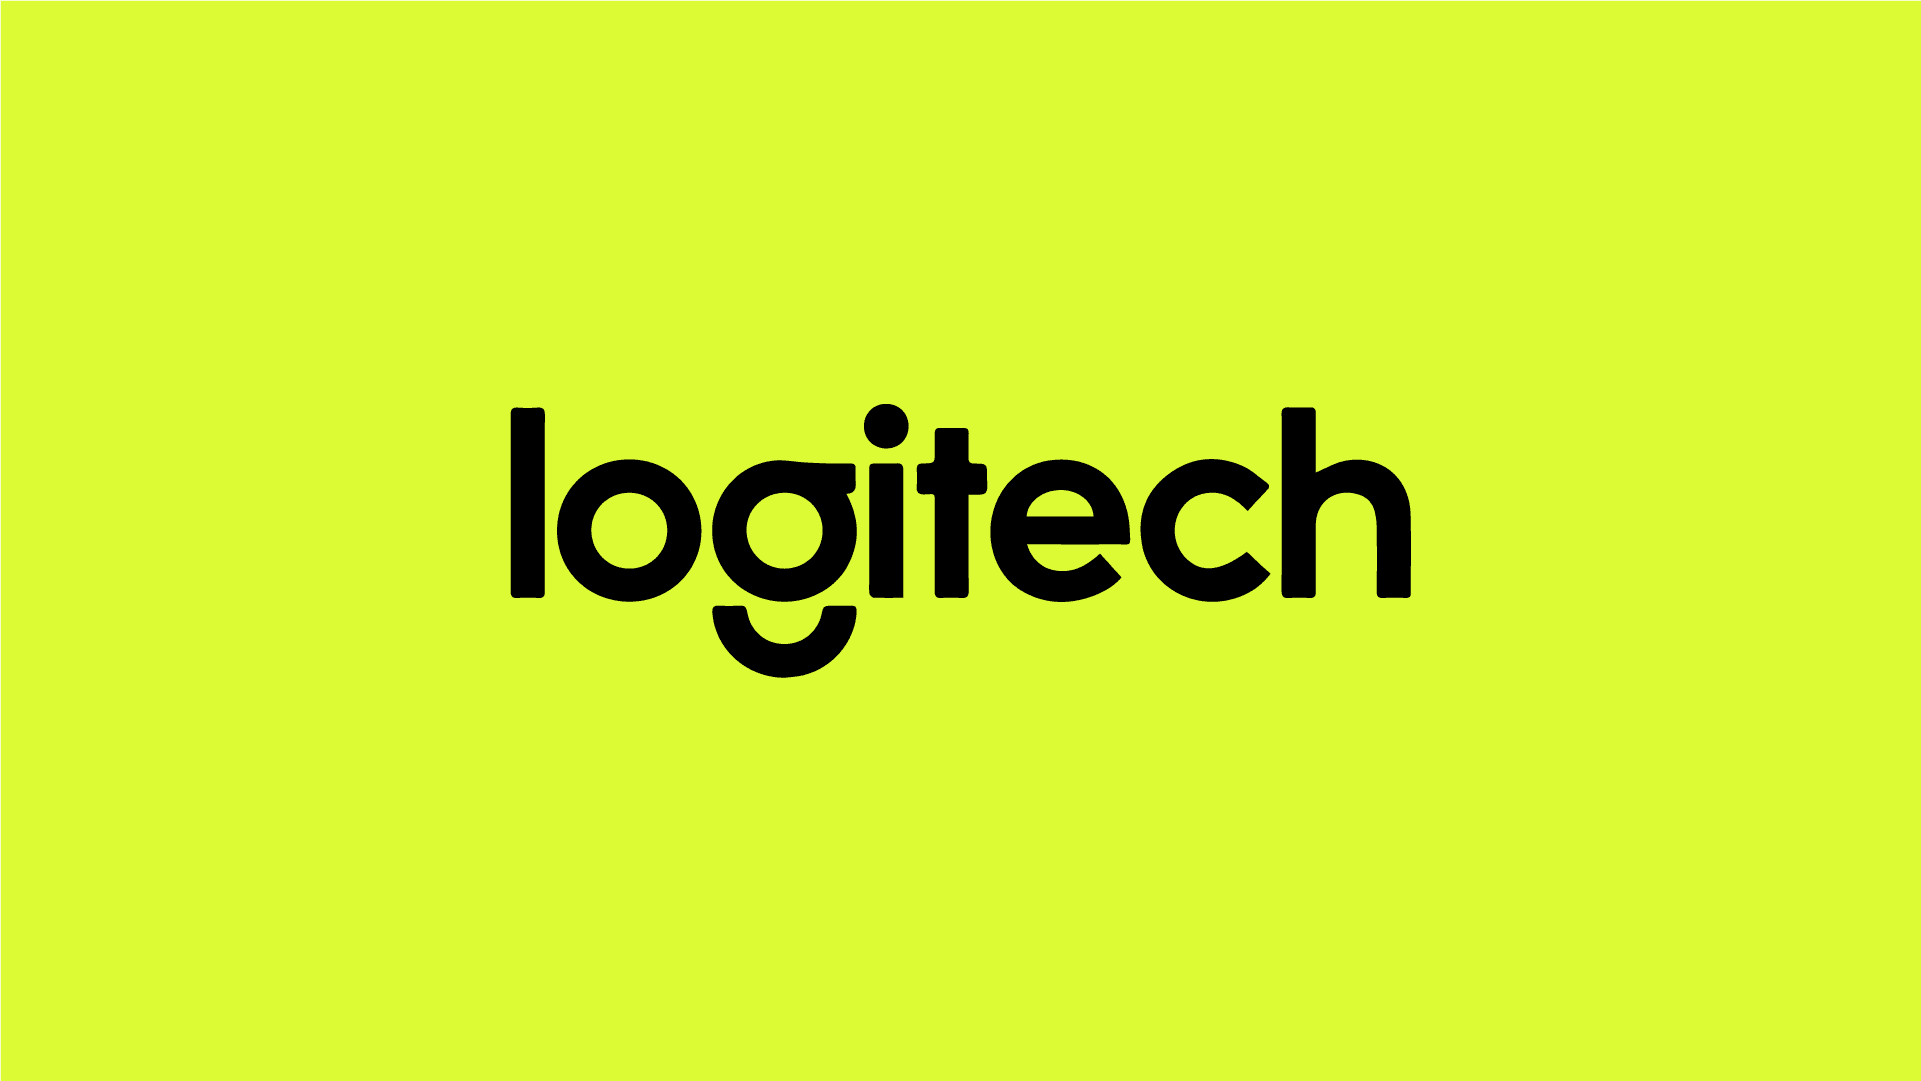 Logitech 新時代下的變動風貌 由 LOGO 設計看一間公司的風格